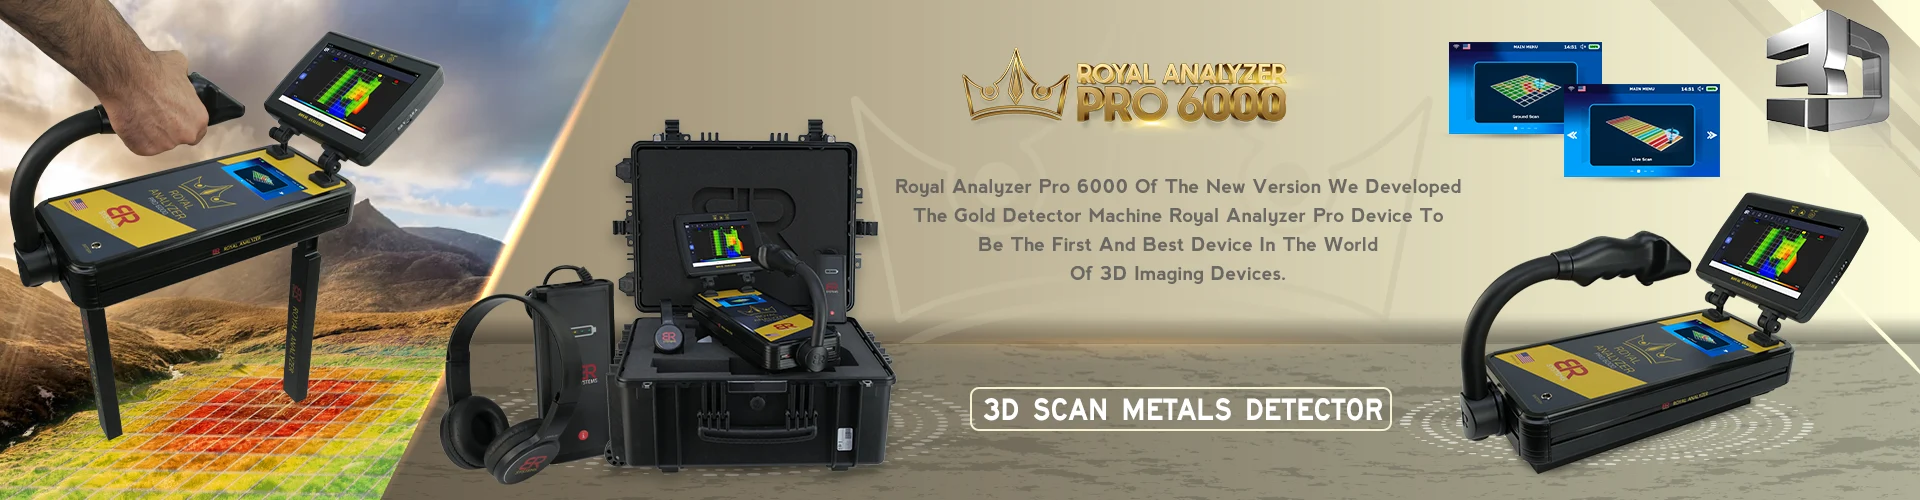 Royal Analyzer Pro 6000 - Detector de oro escáner 3d